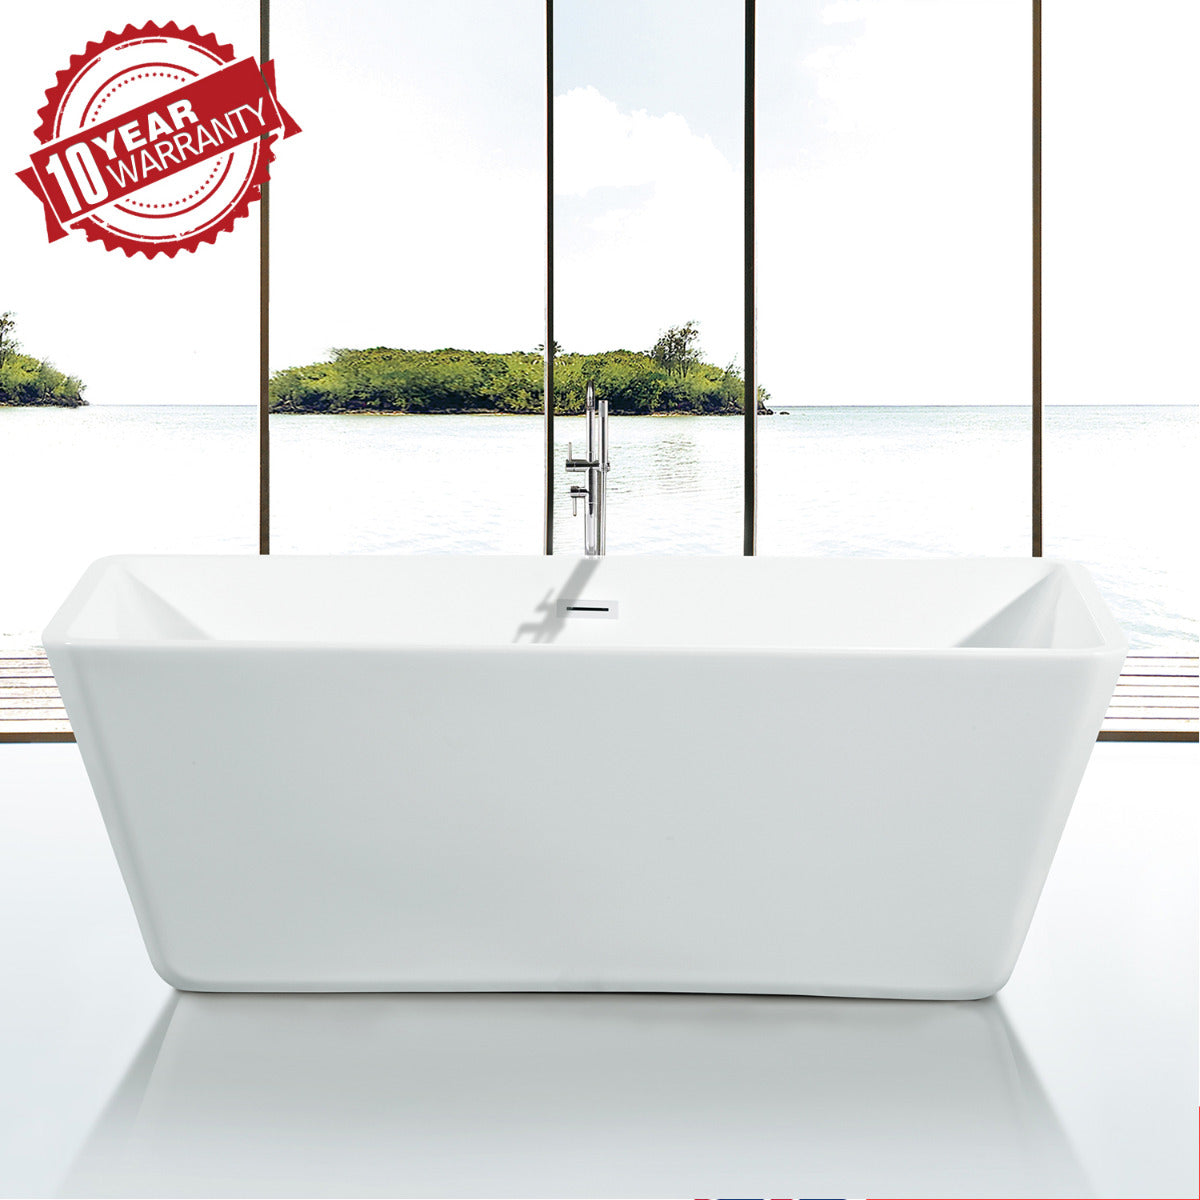 JassferryJASSFERRY Modern Freestanding Bathtub Luxury Rectangular Hourglass Design WhiteBathtubs